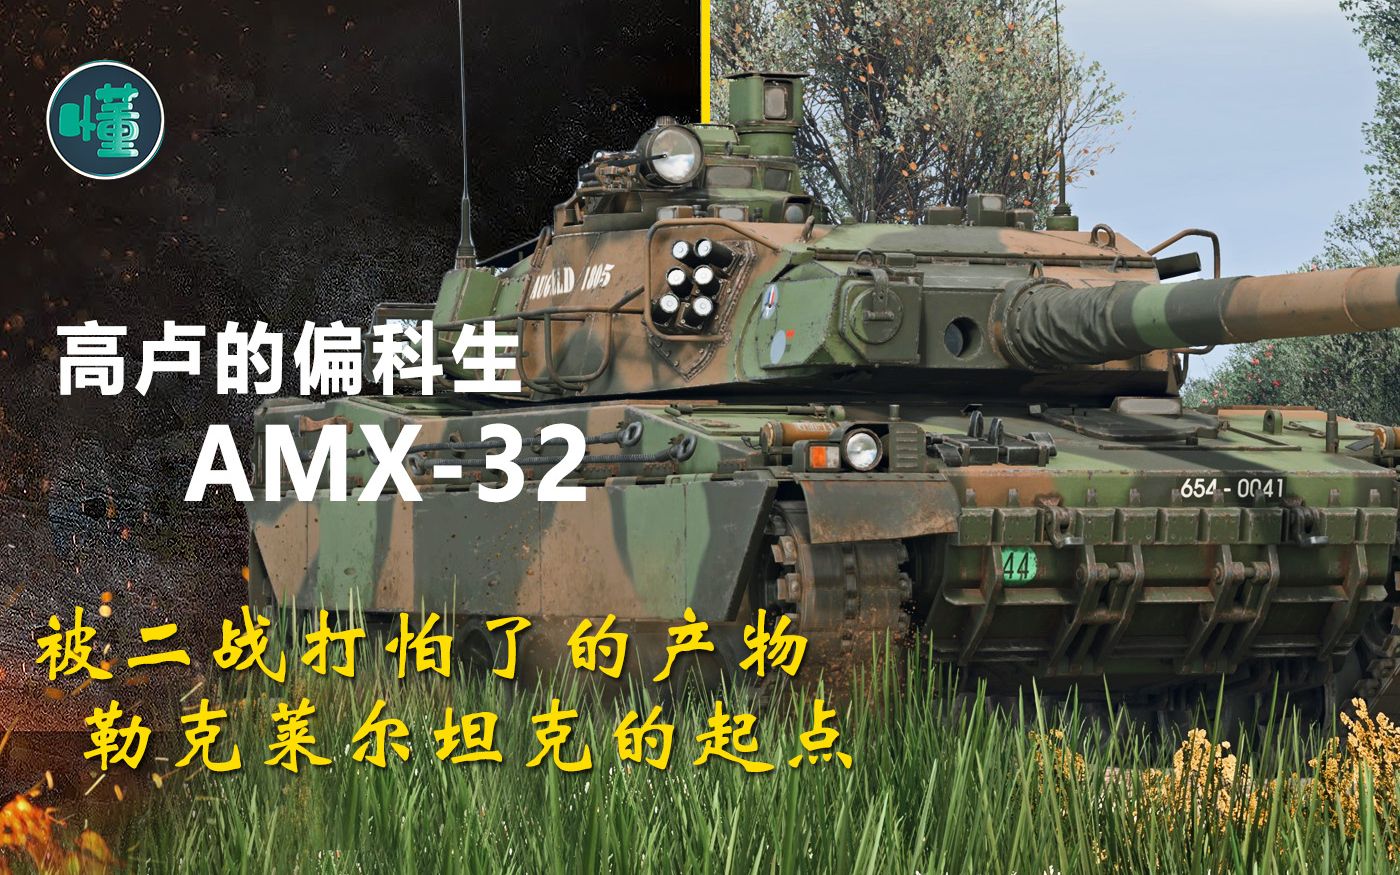 高卢的偏科生AMX-32：被二战打怕了的产物 勒克莱尔坦克的起点